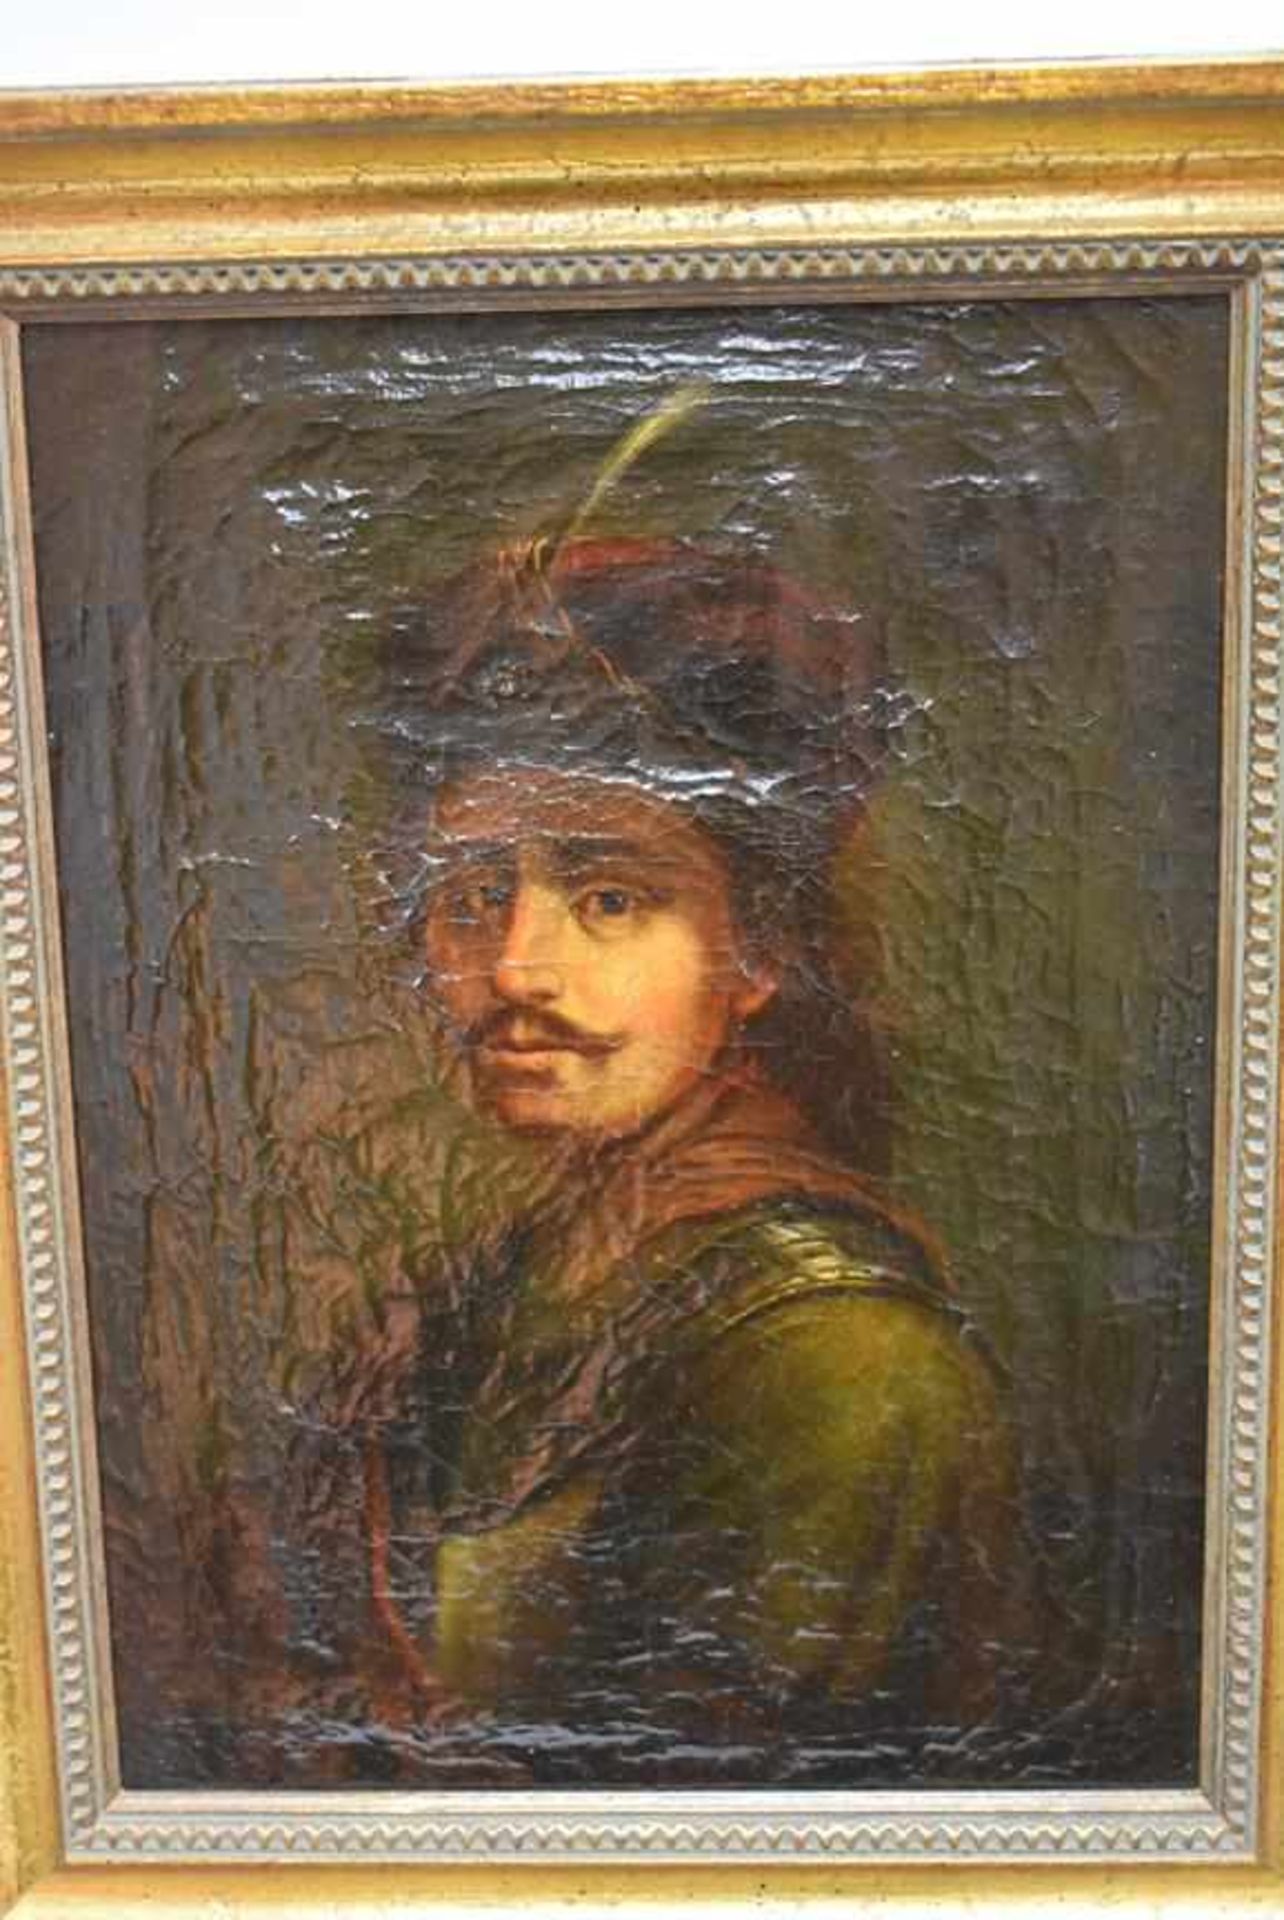 "Orientale" Porträt um 1800 Öl auf Leinwand, Gemälde eines unbekannter Künstlers um 1800. Porträt